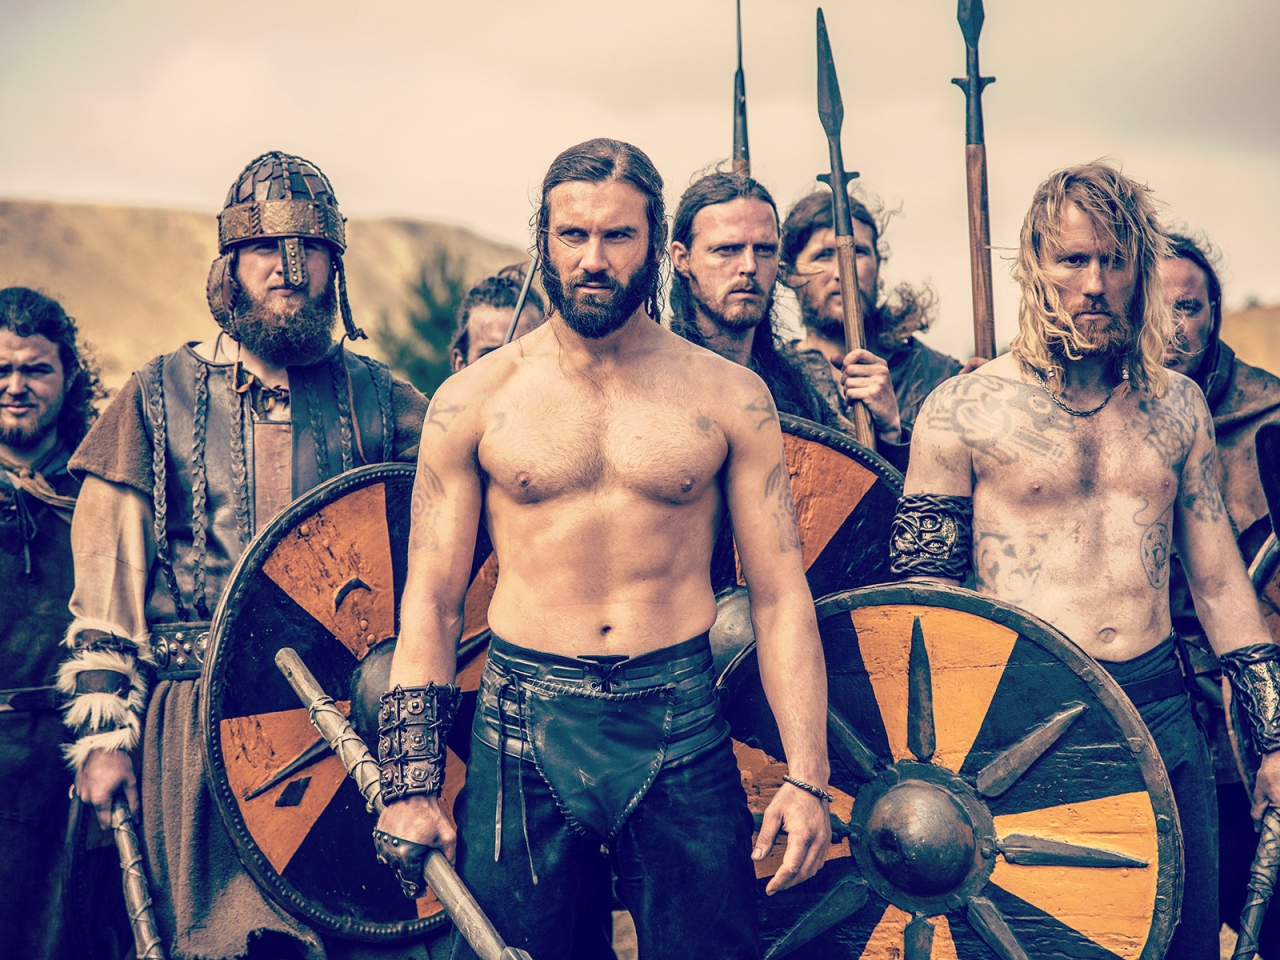 Vikings Season 2 Scene for 1280 x 960 resolution